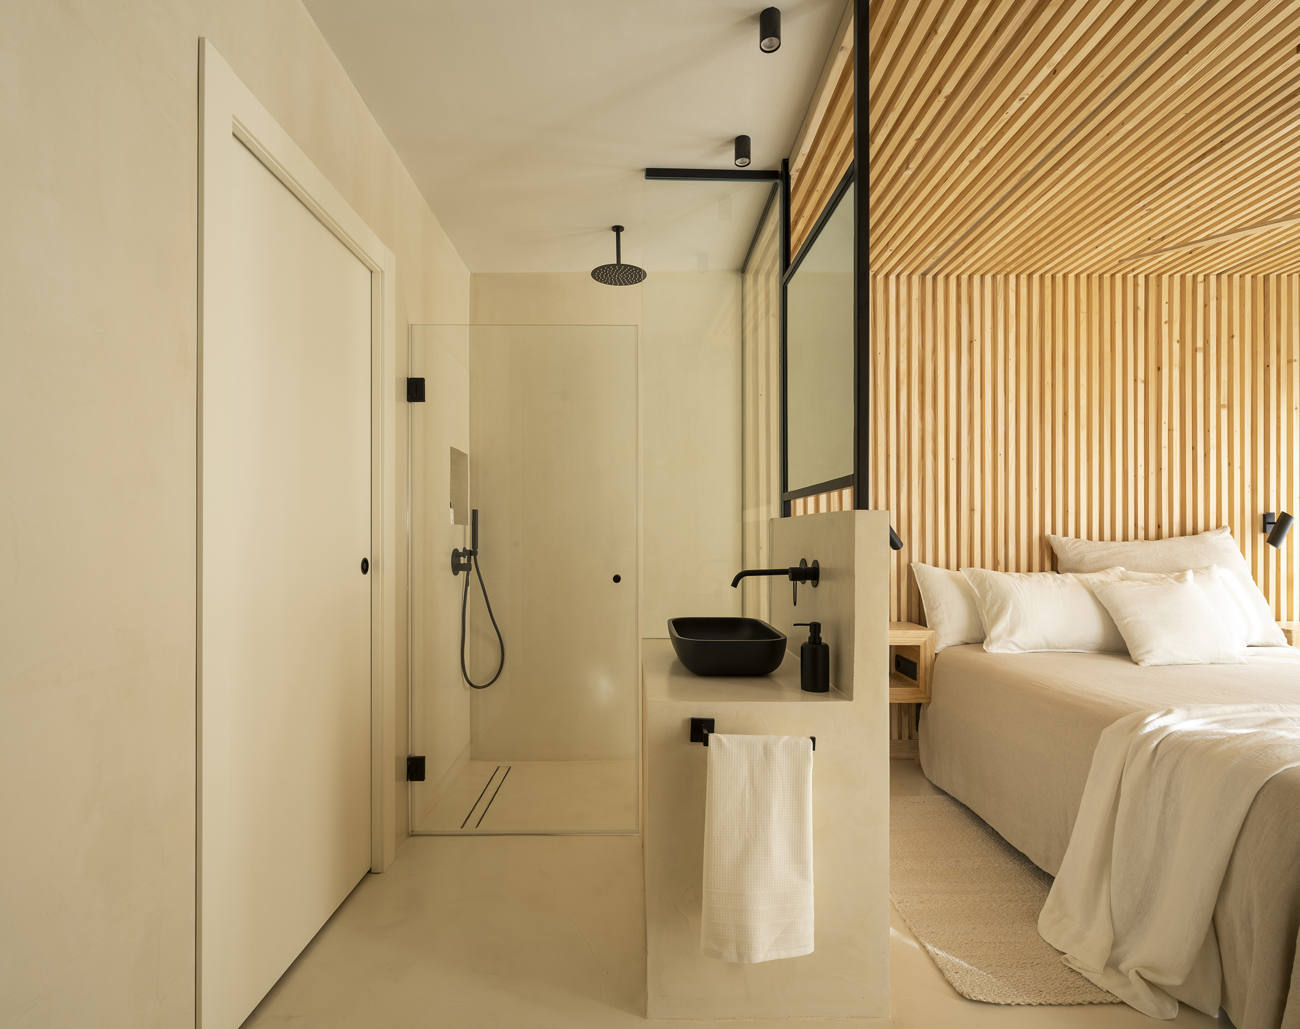  Camera con doccia in microcemento in un hotel di Venezia